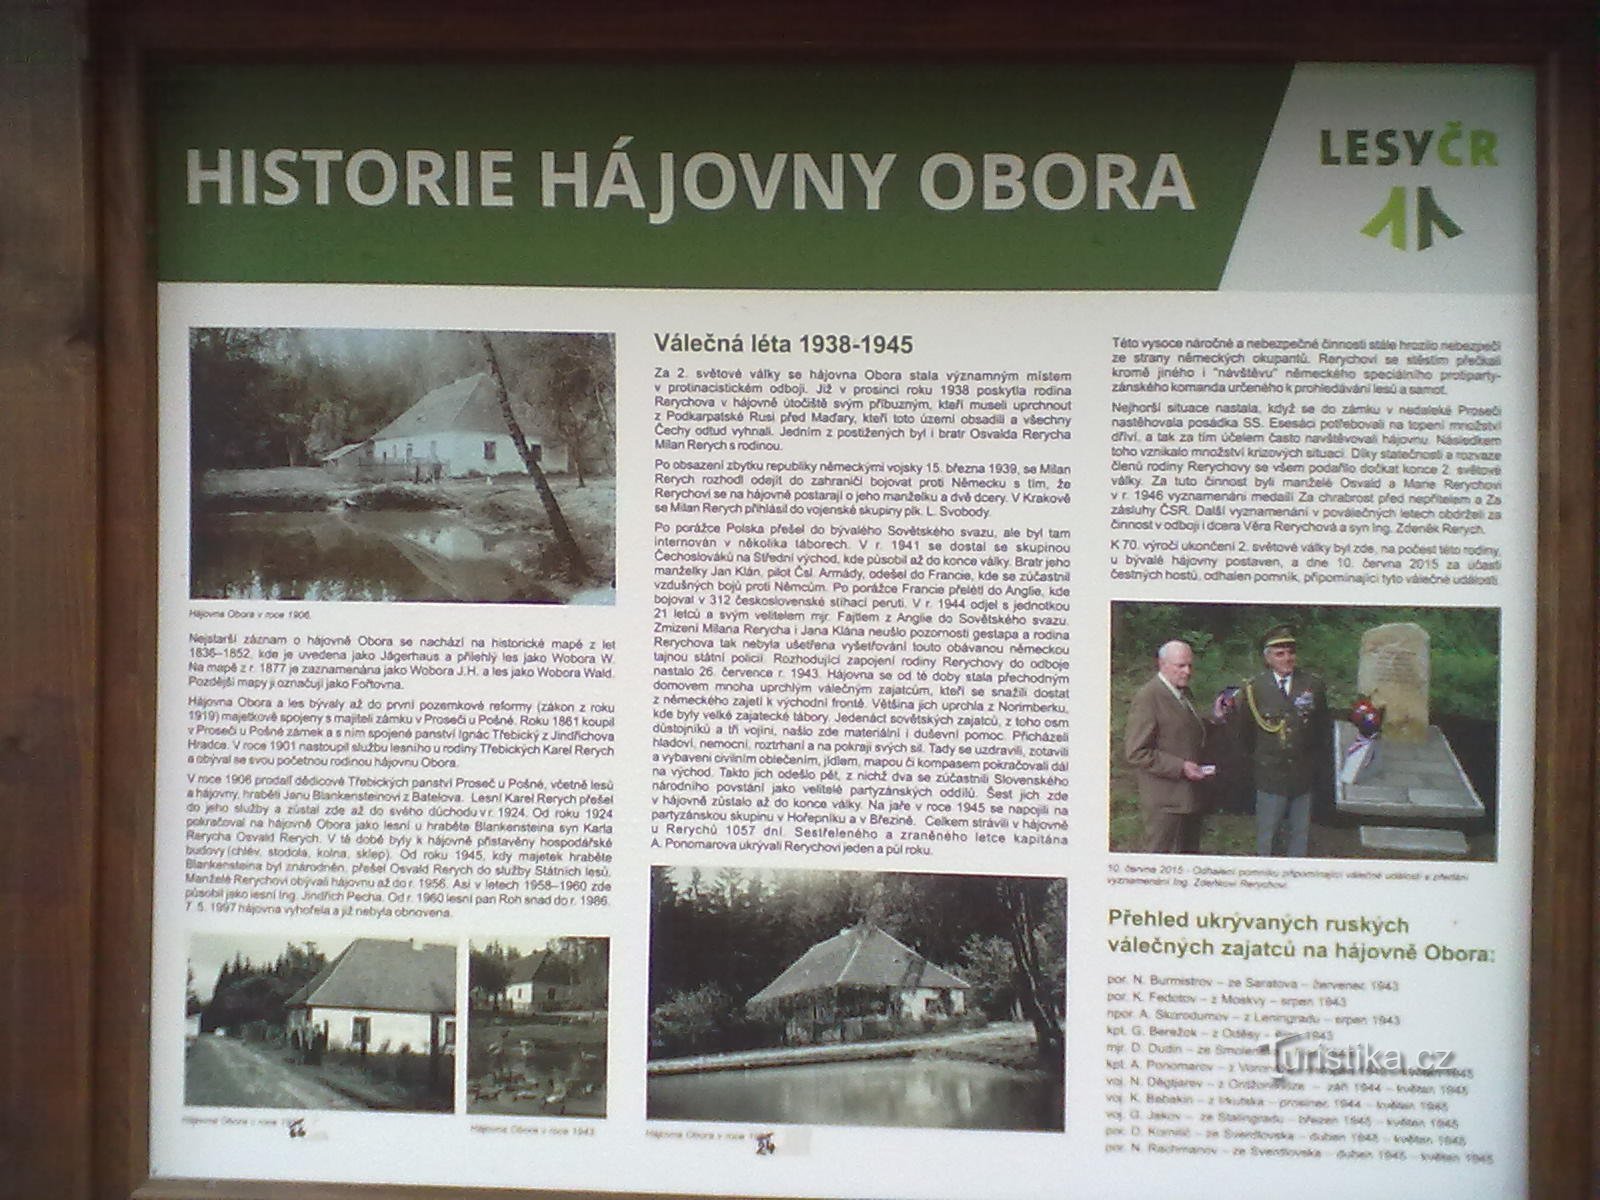 2. O antigo esconderijo de Rerychov - durante a guerra, a família escondeu prisioneiros fugitivos dos campos de concentração.